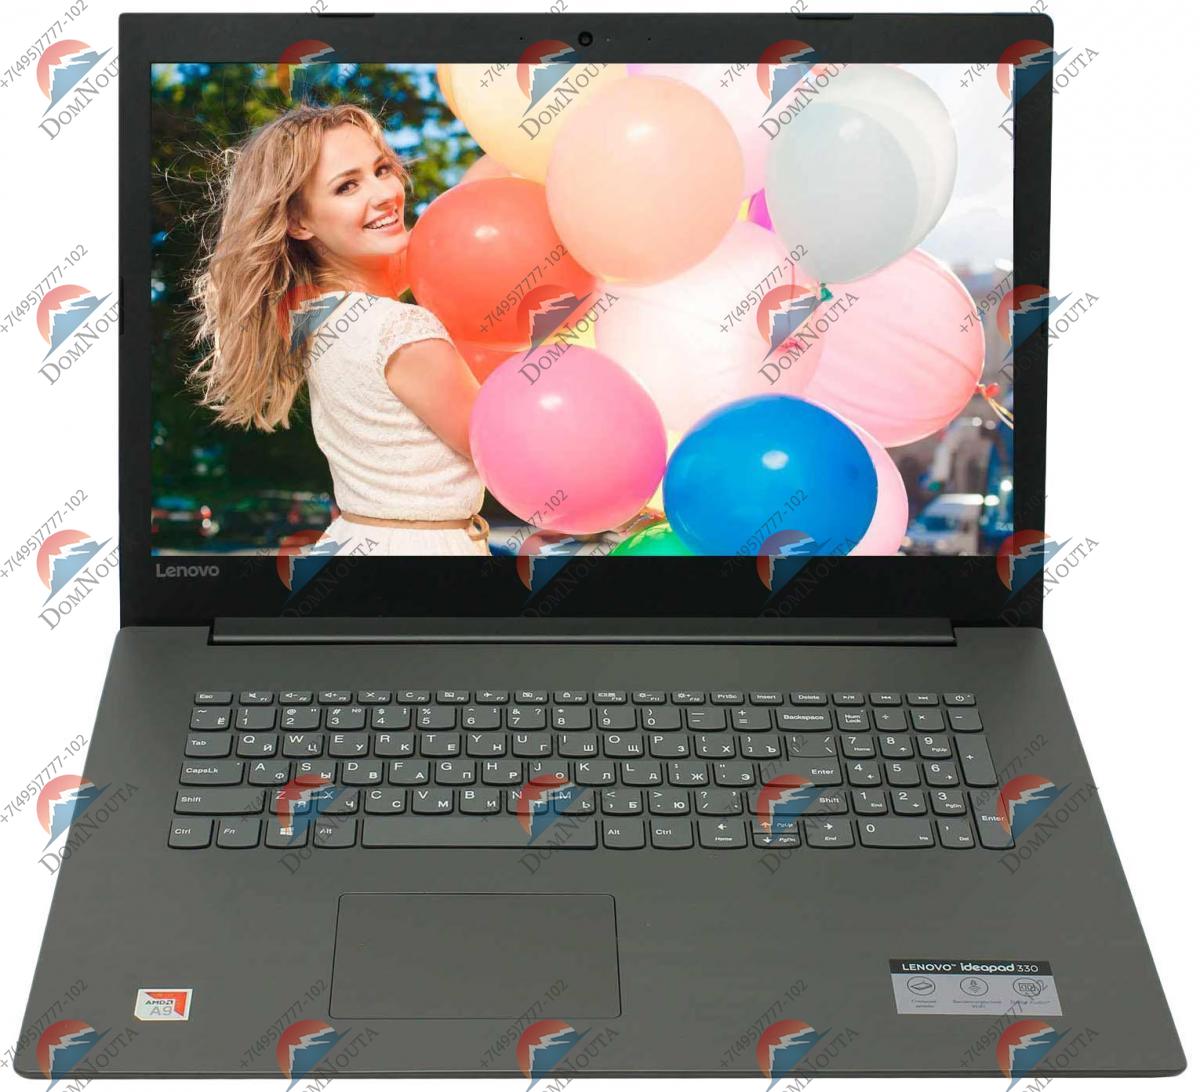 Ноутбук Lenovo Ideapad 330 17ikb Купить